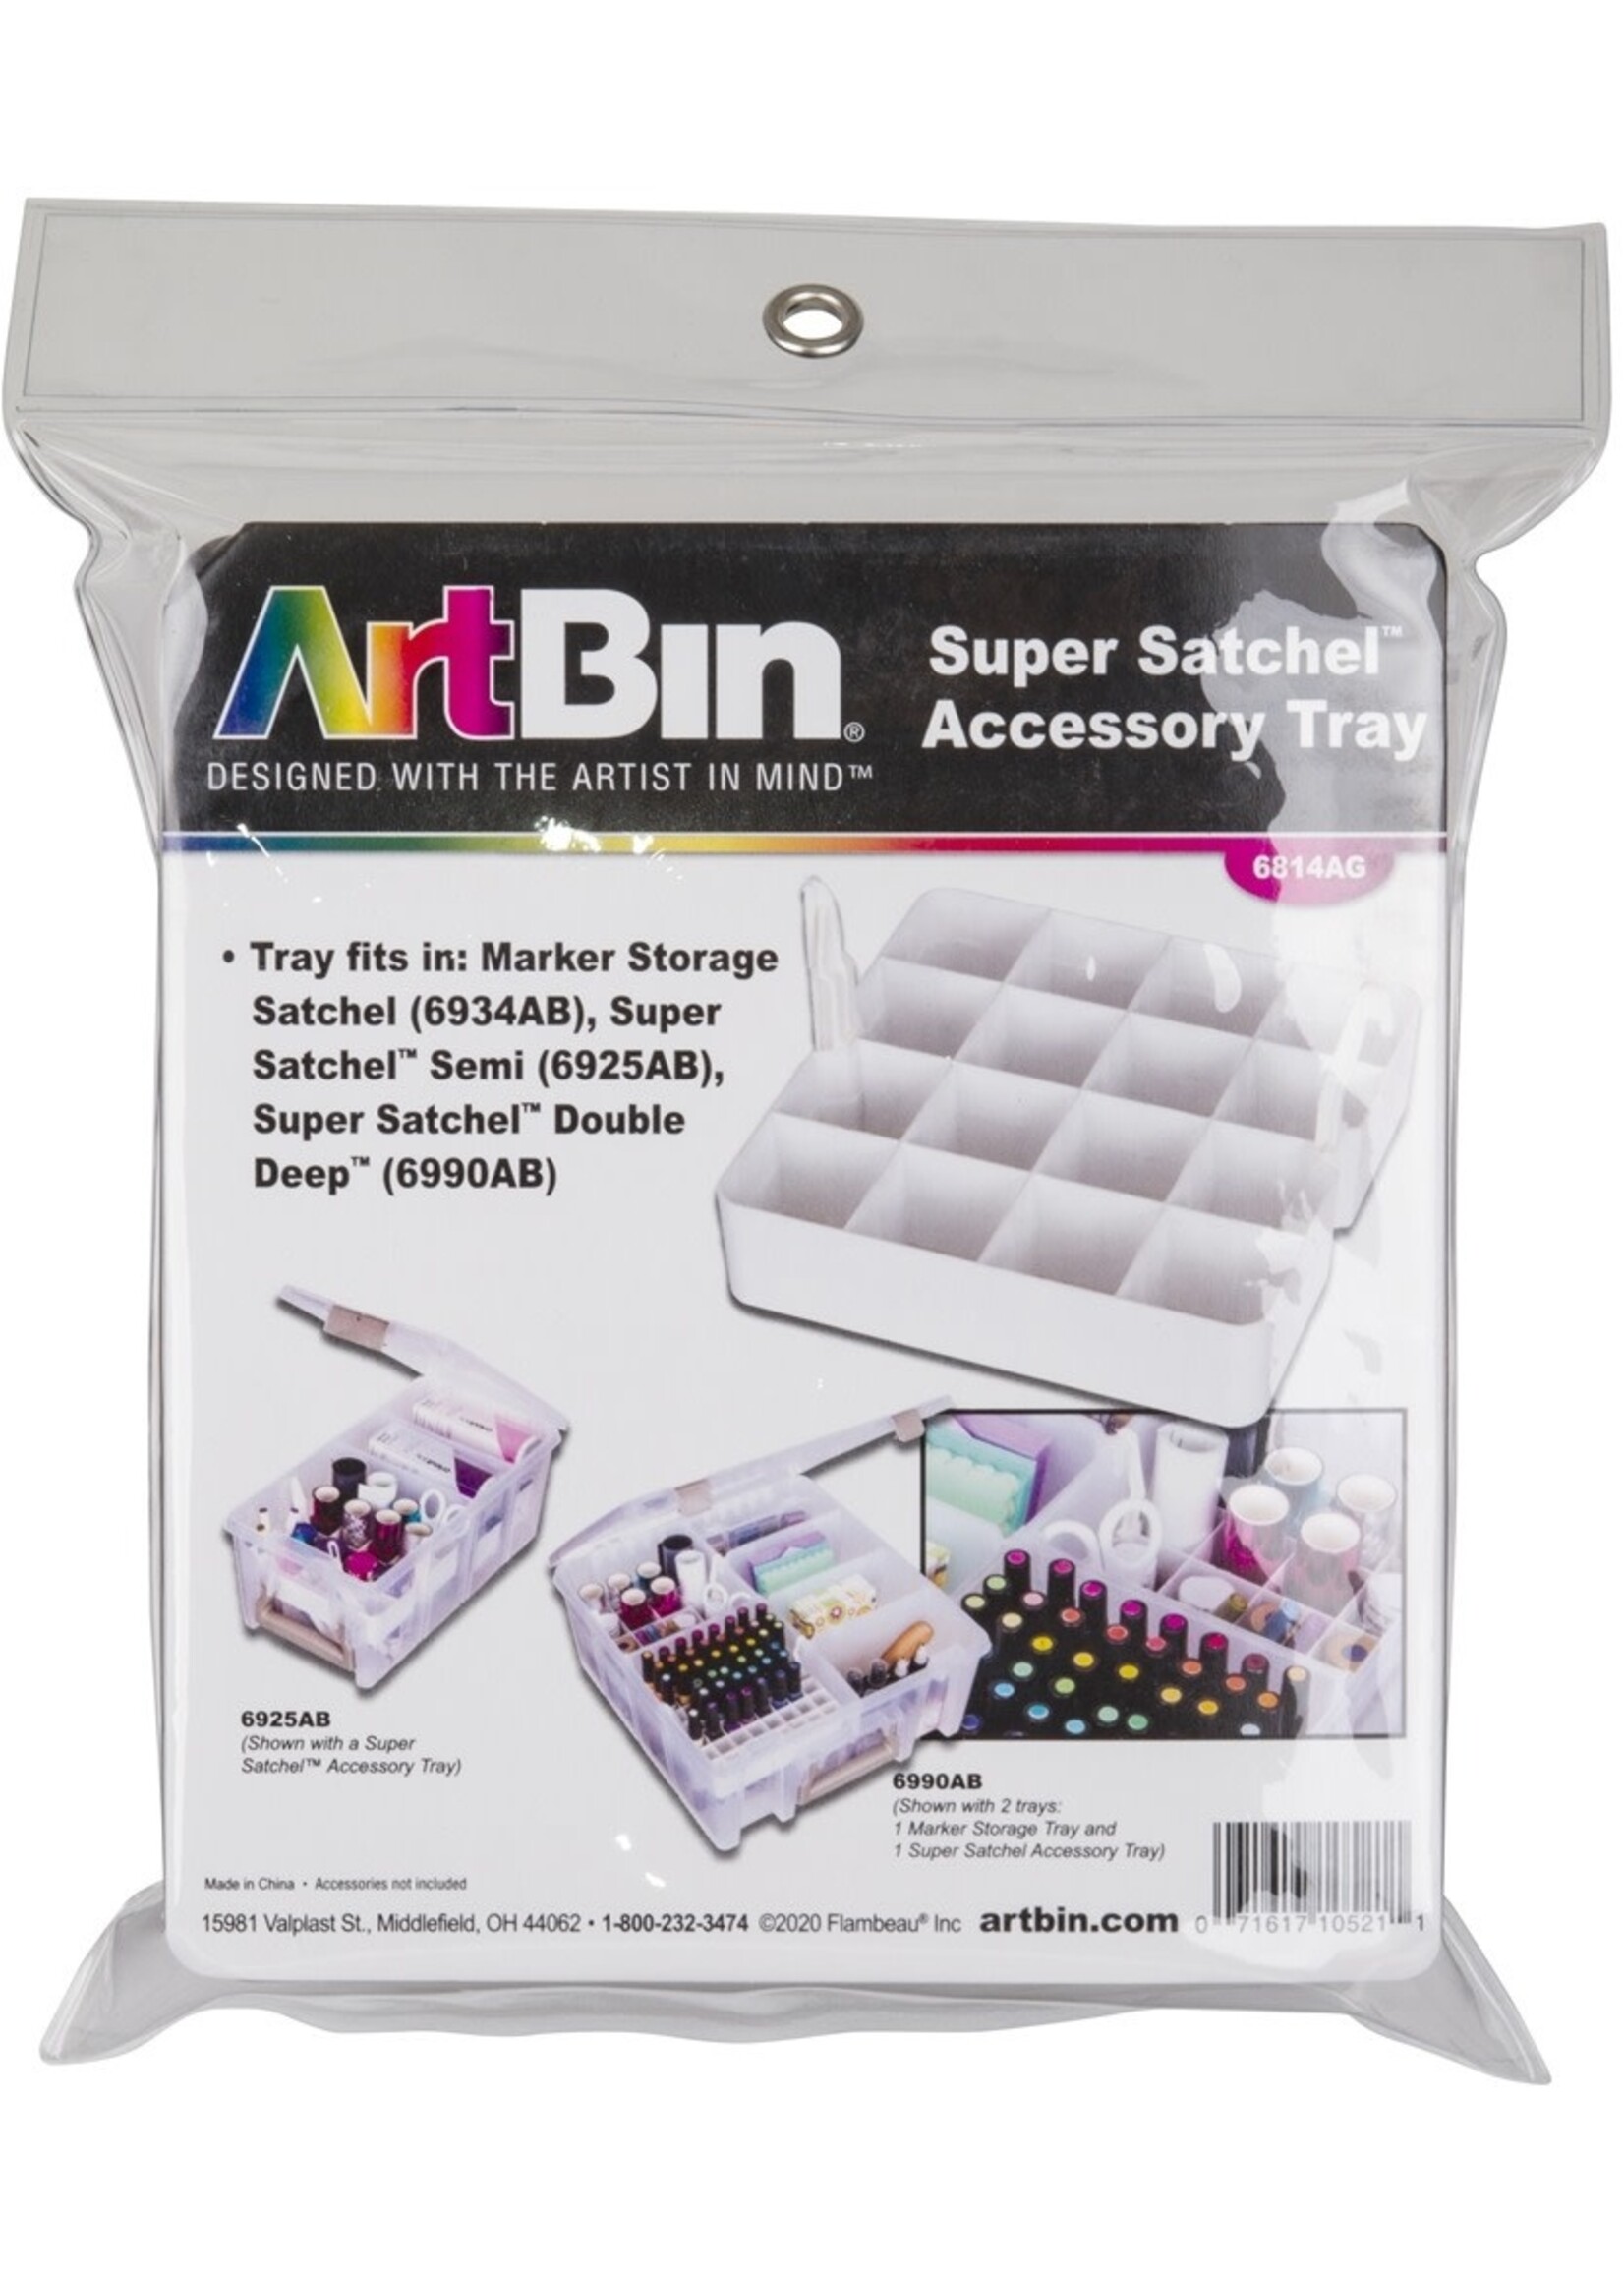 Art Bin Art Bin Super Satchel Accessory Tray